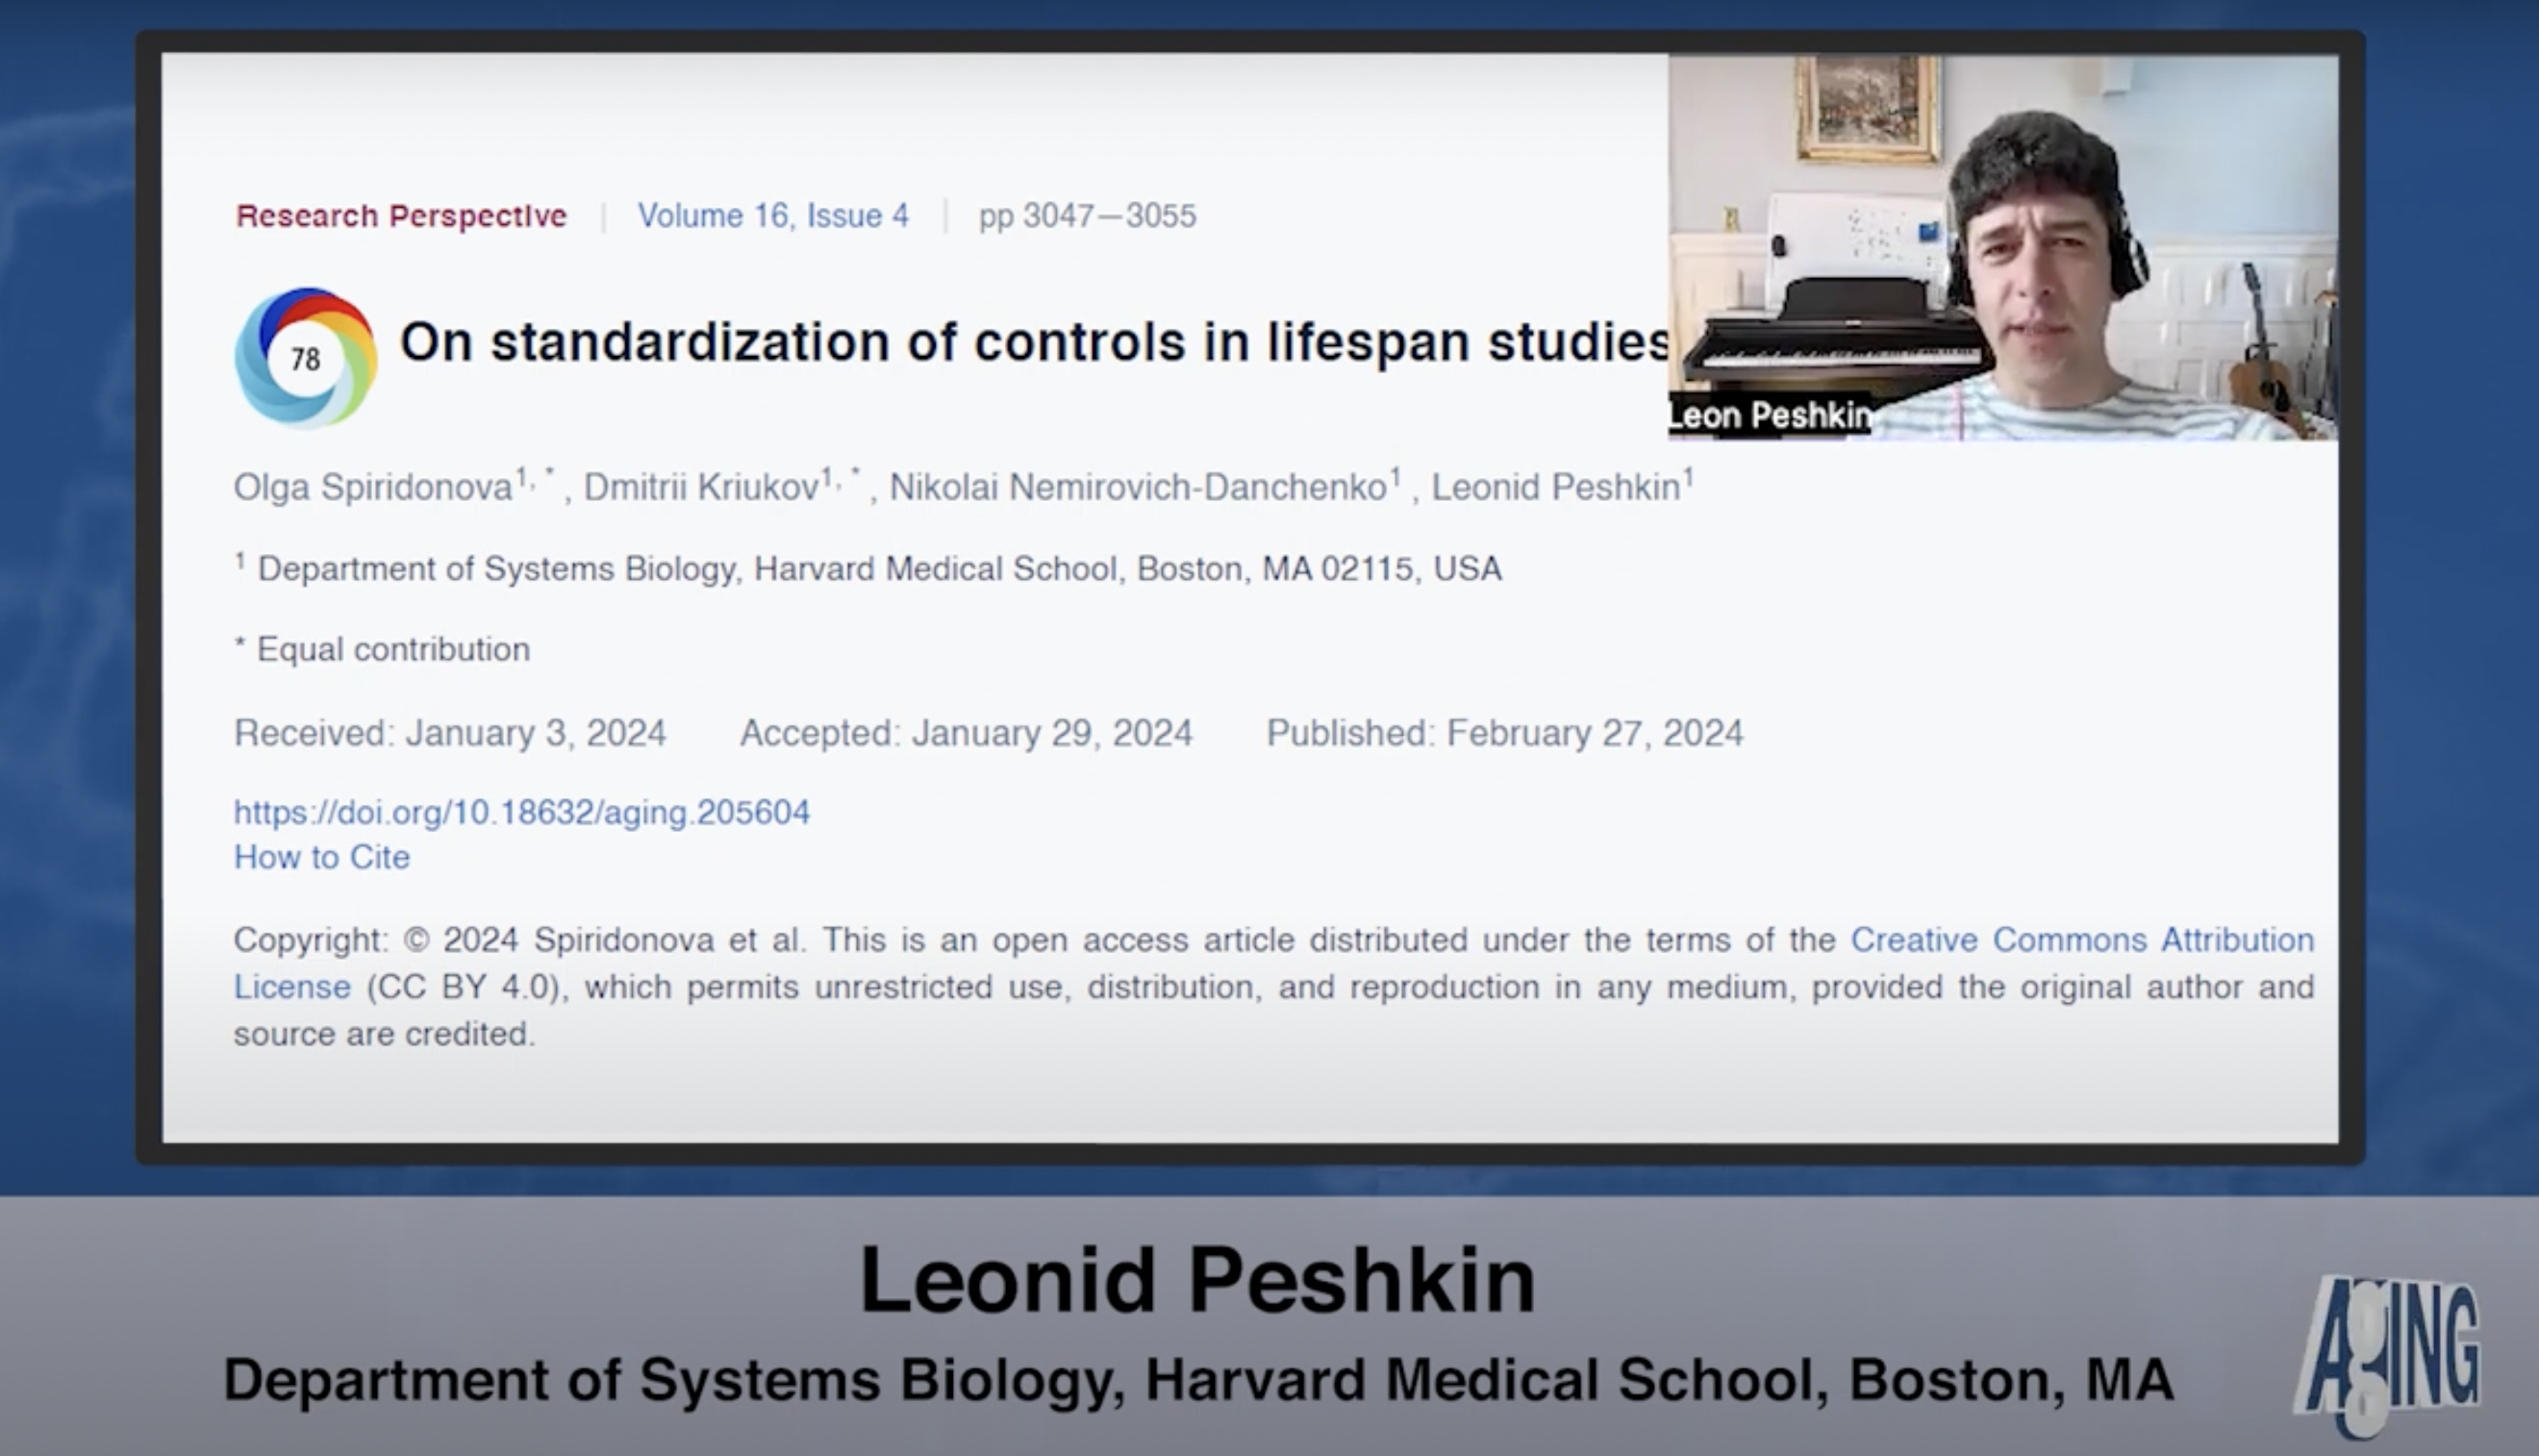 Dr. Leonid Peshkin